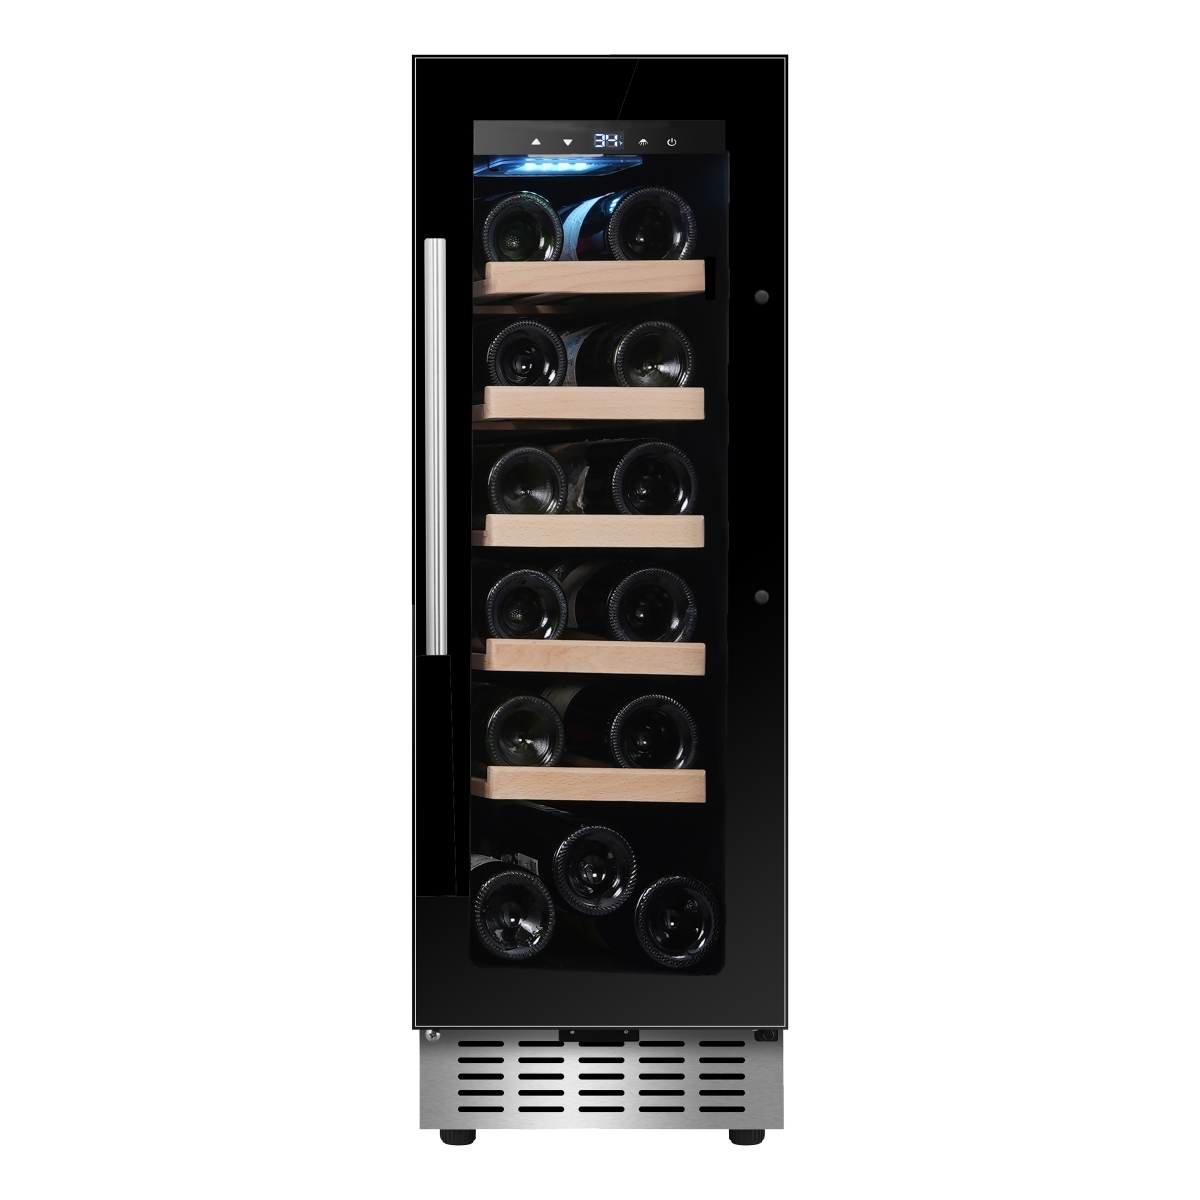 Equator Advanced Appliances WR18B  18-bottle Built-in/Freestanding Wine Refrigerator with 7 Color LED Lights - Black